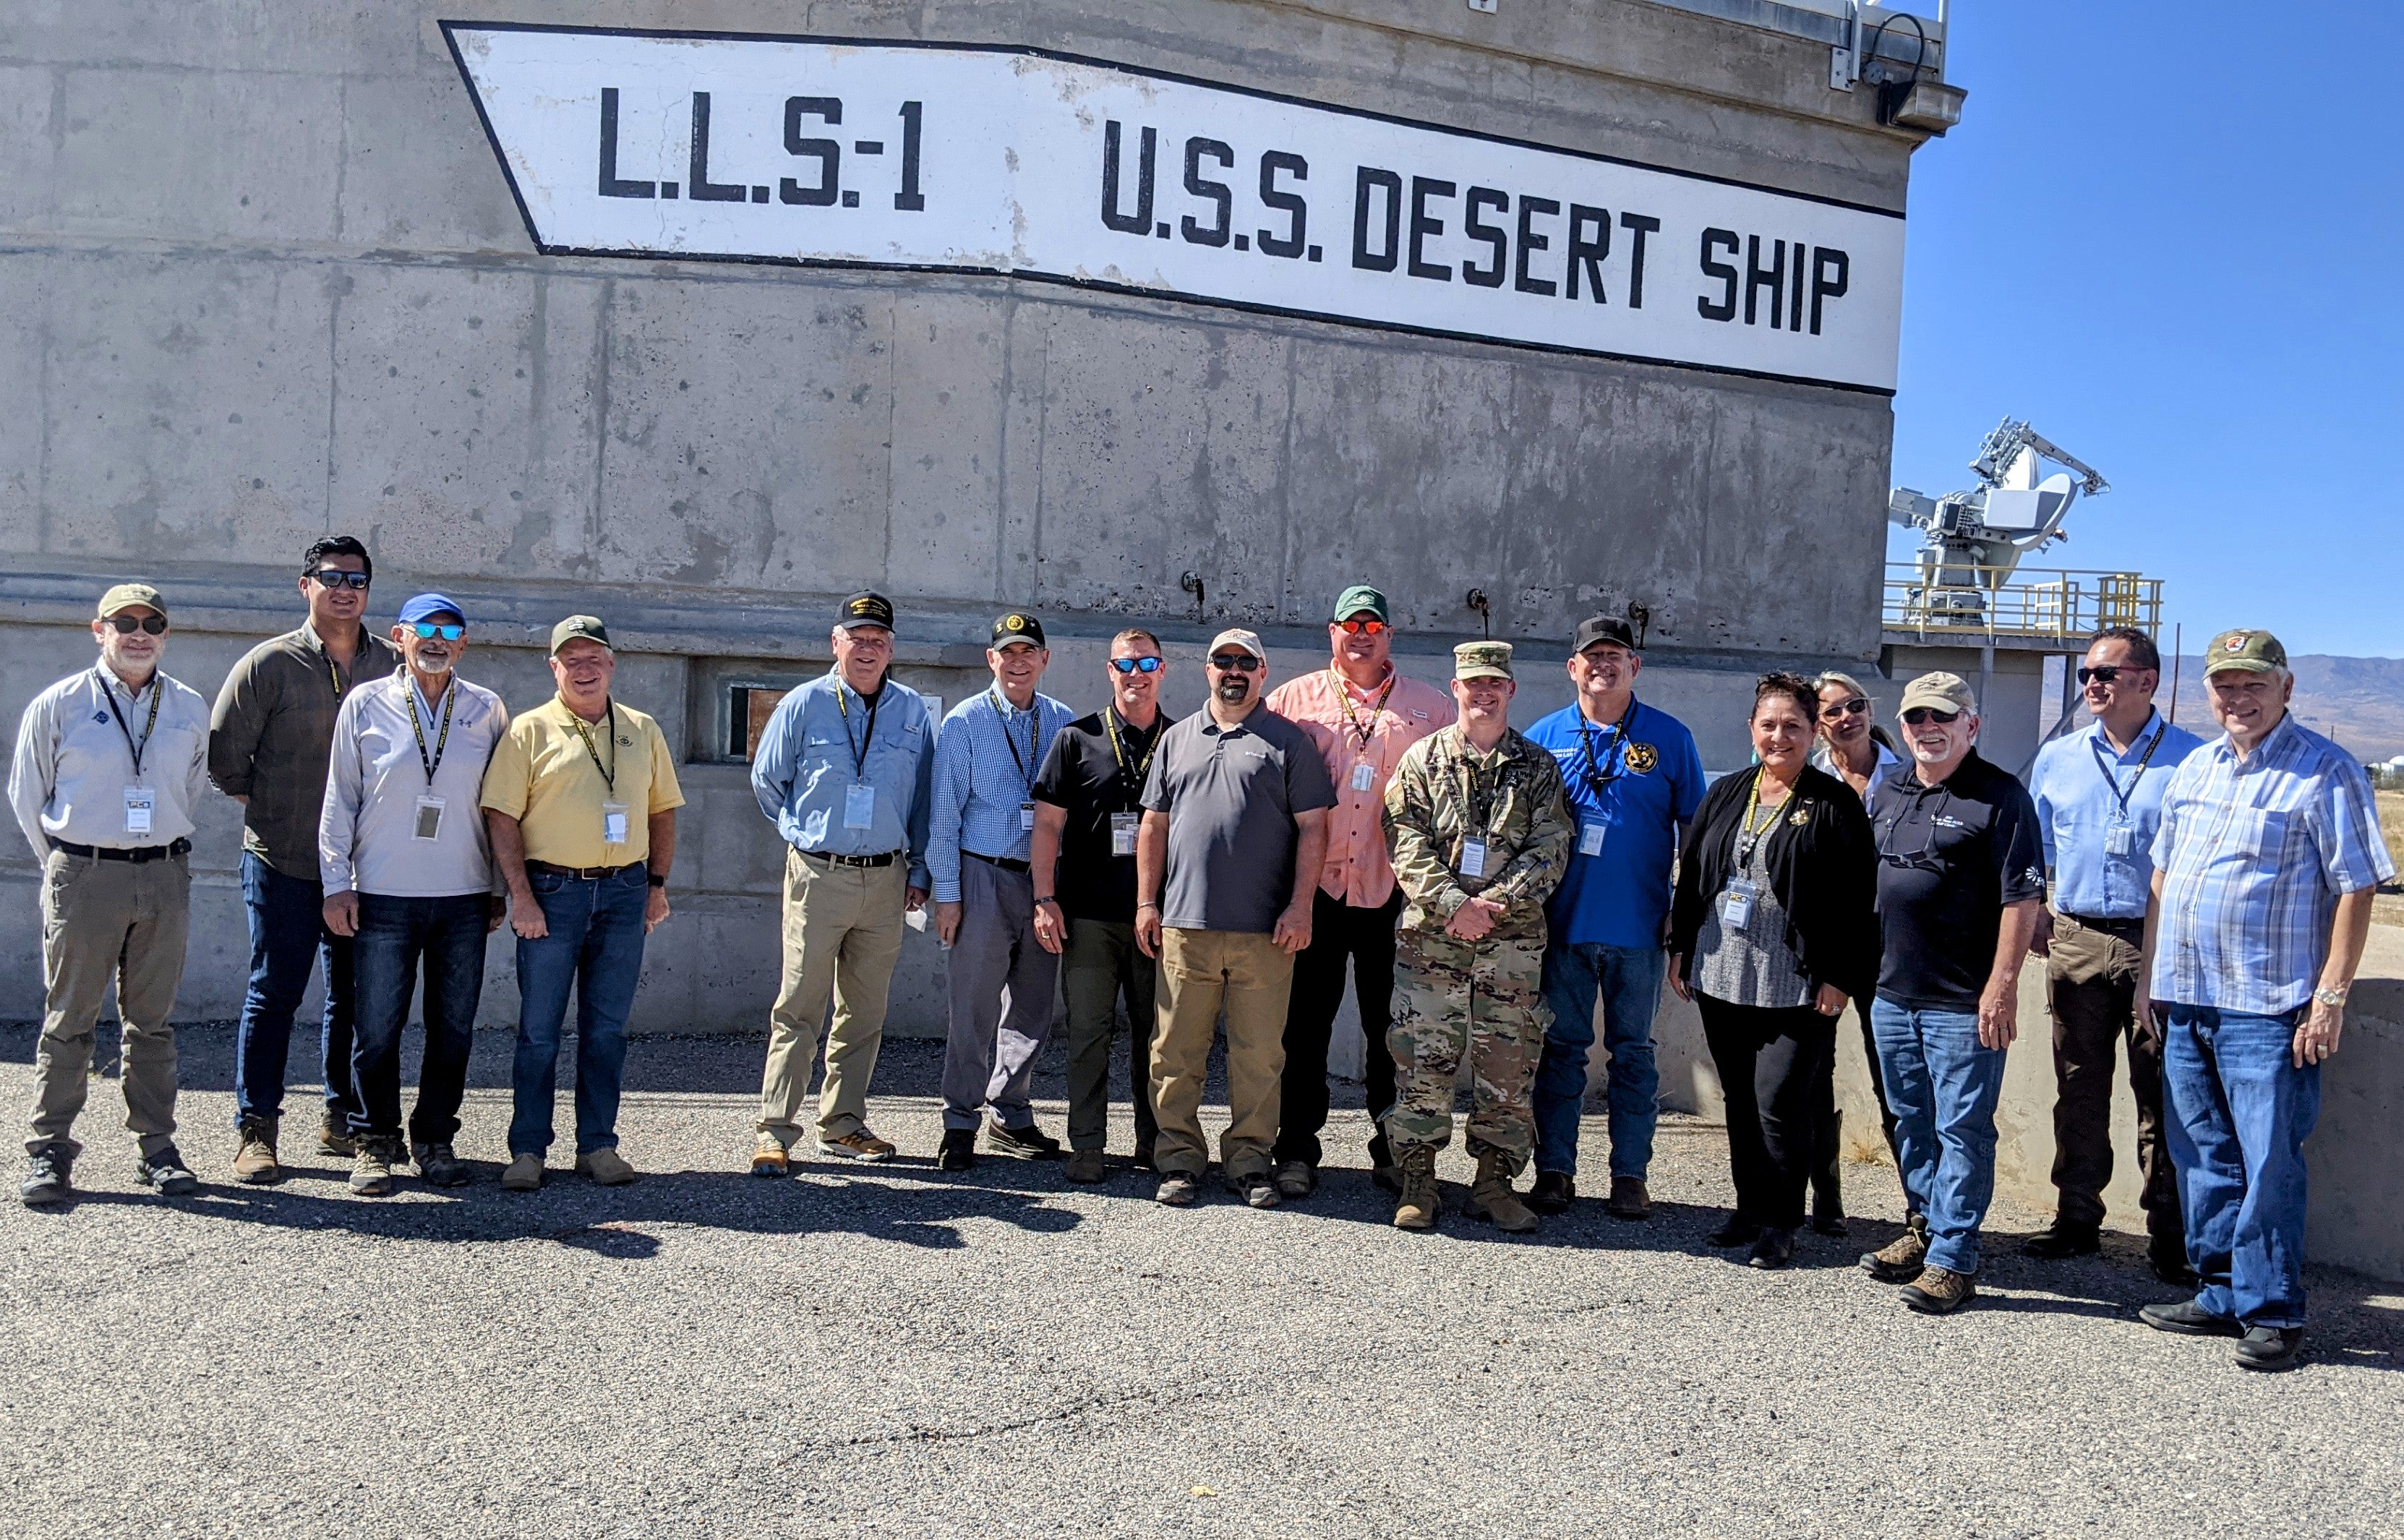 U.S. Navy’s Desert Ship1 at White Sands Missile Range